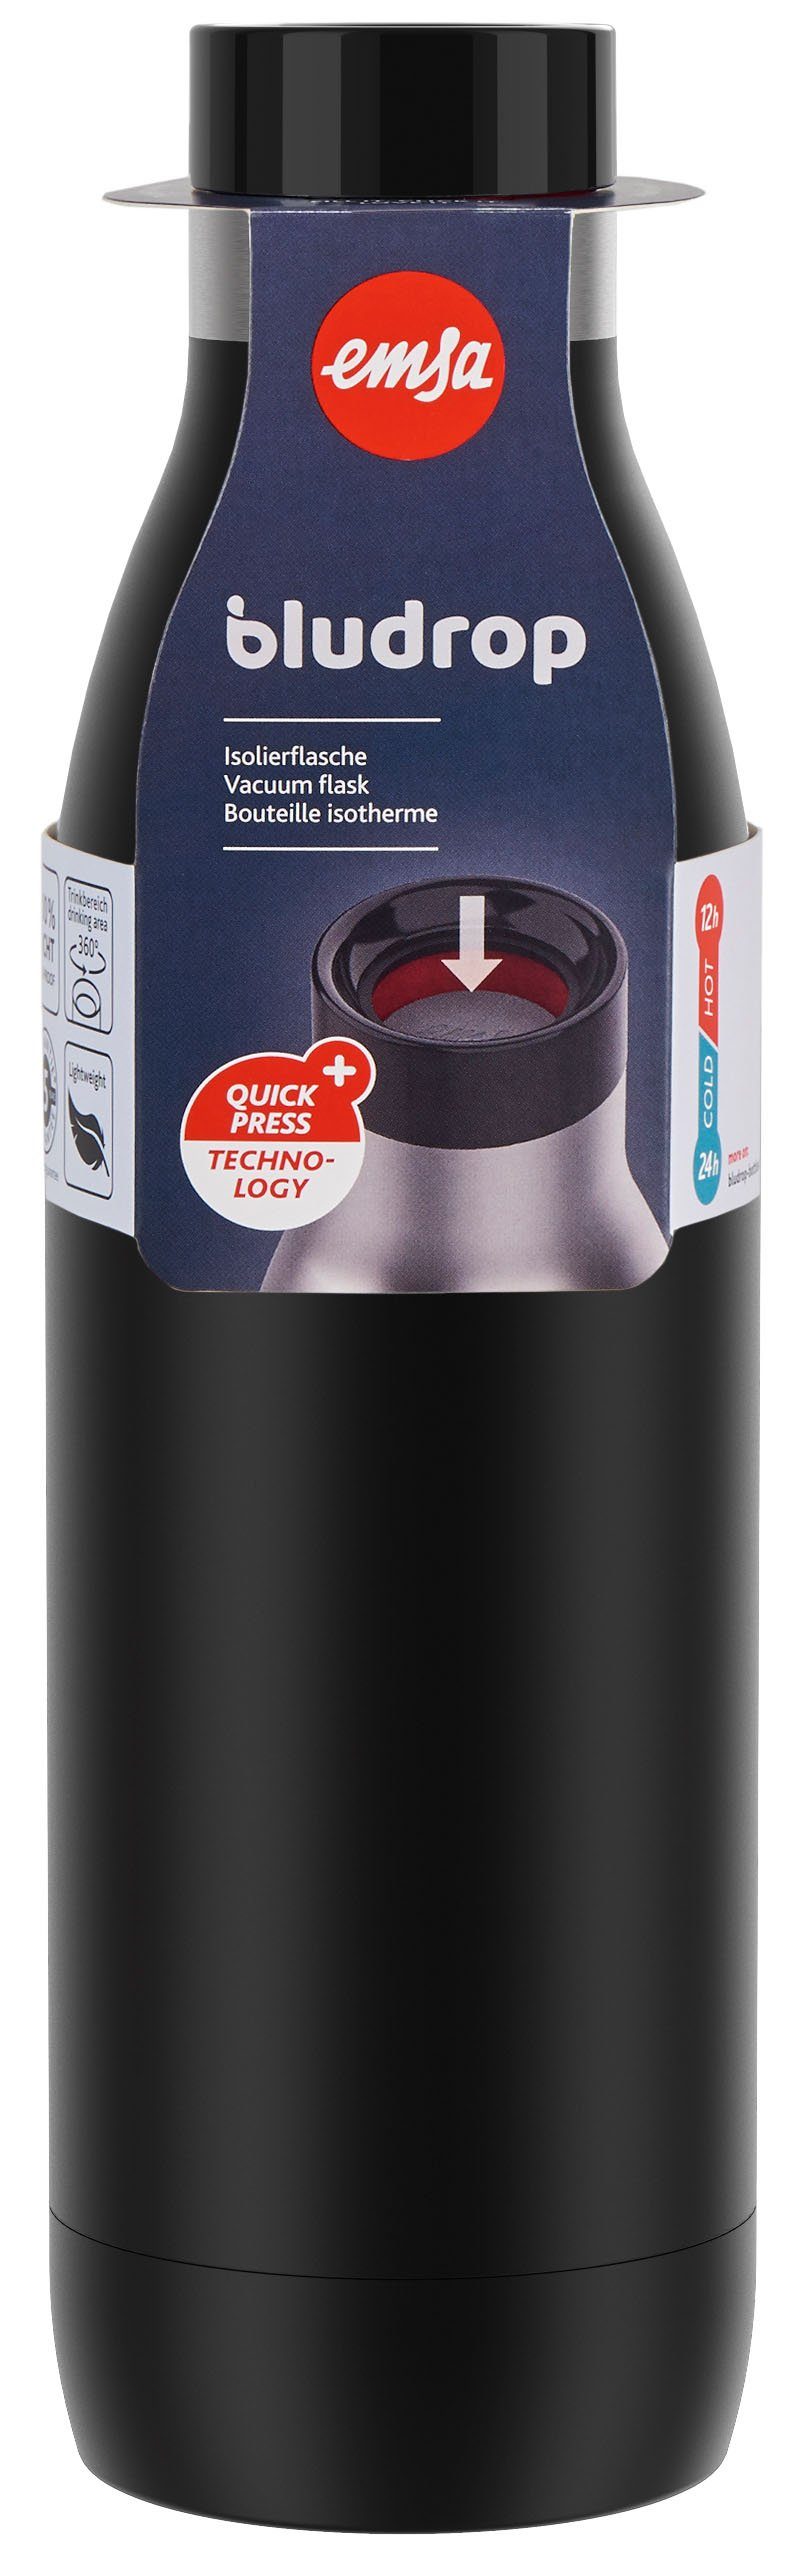 Quick-Press warm/24h schwarz 12h Edelstahl, Bludrop Color, Trinkflasche Emsa kühl, Deckel, spülmaschinenfest